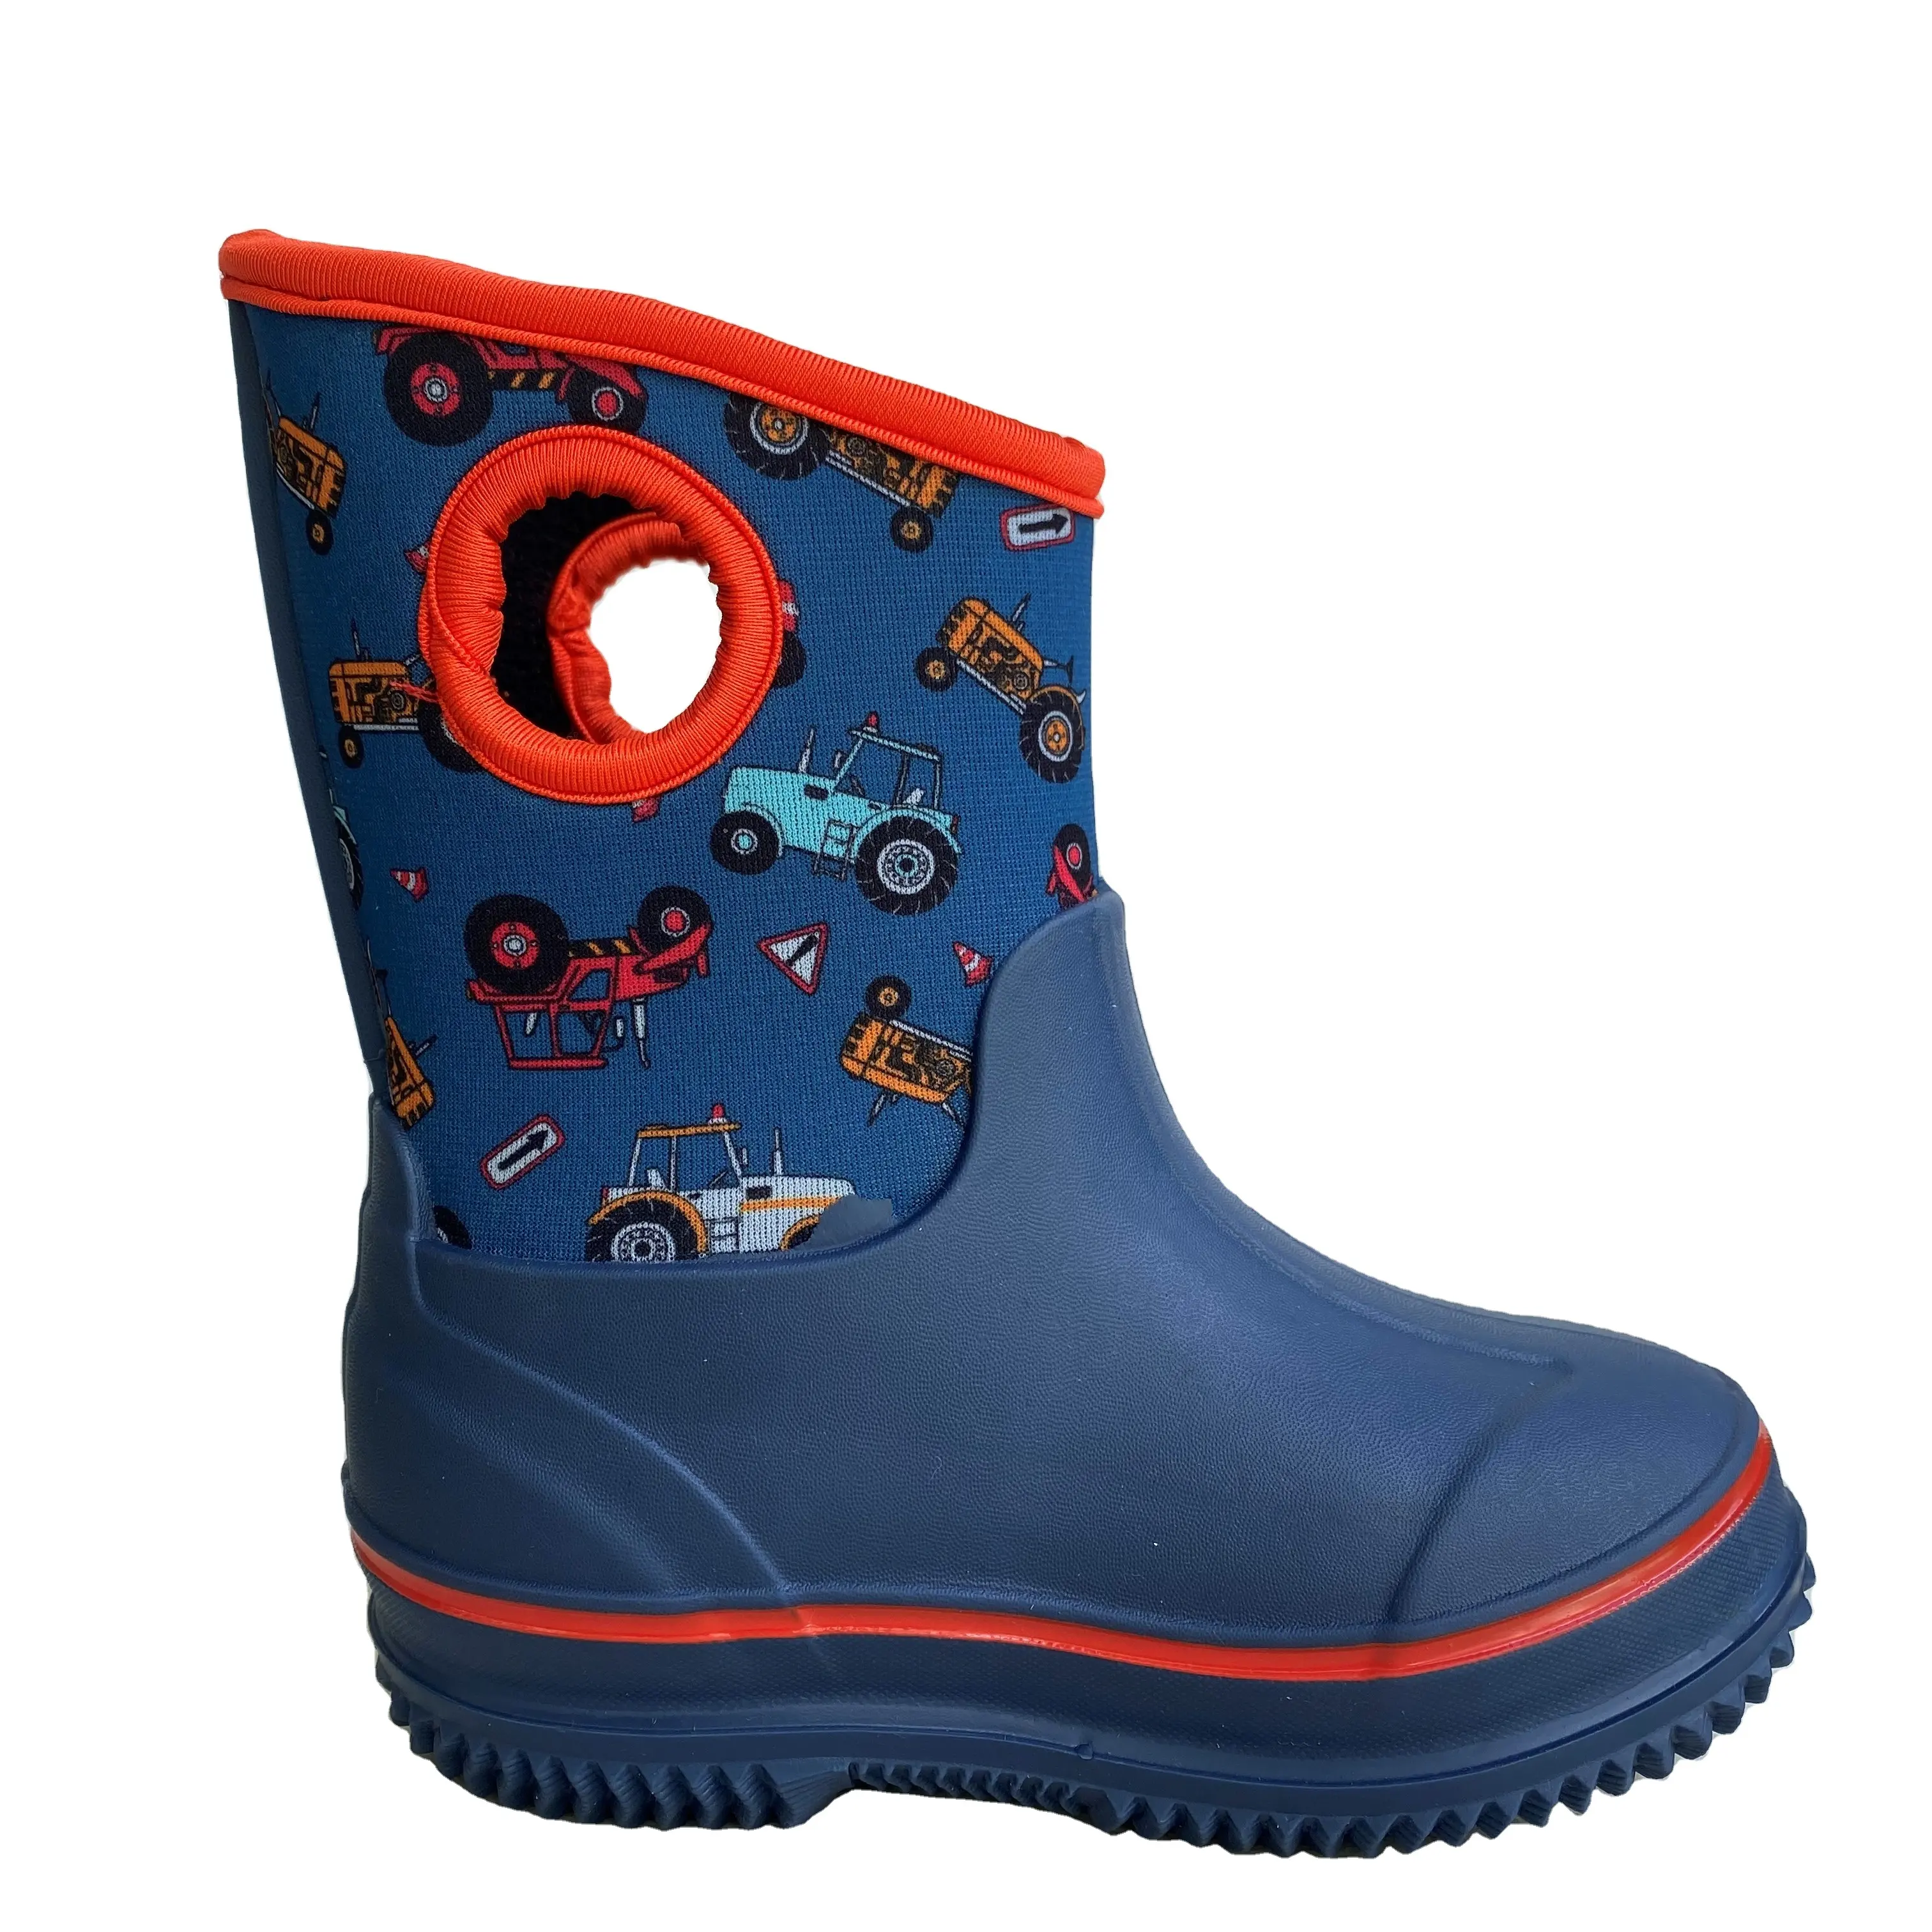 Su geçirmez kaymaz neopren çocuk yağmur çizmeleri sıcak satış bebek çocuk yarım çizmeler ayakkabı özelleştirmek Logo desen bahçe ayakkabısı